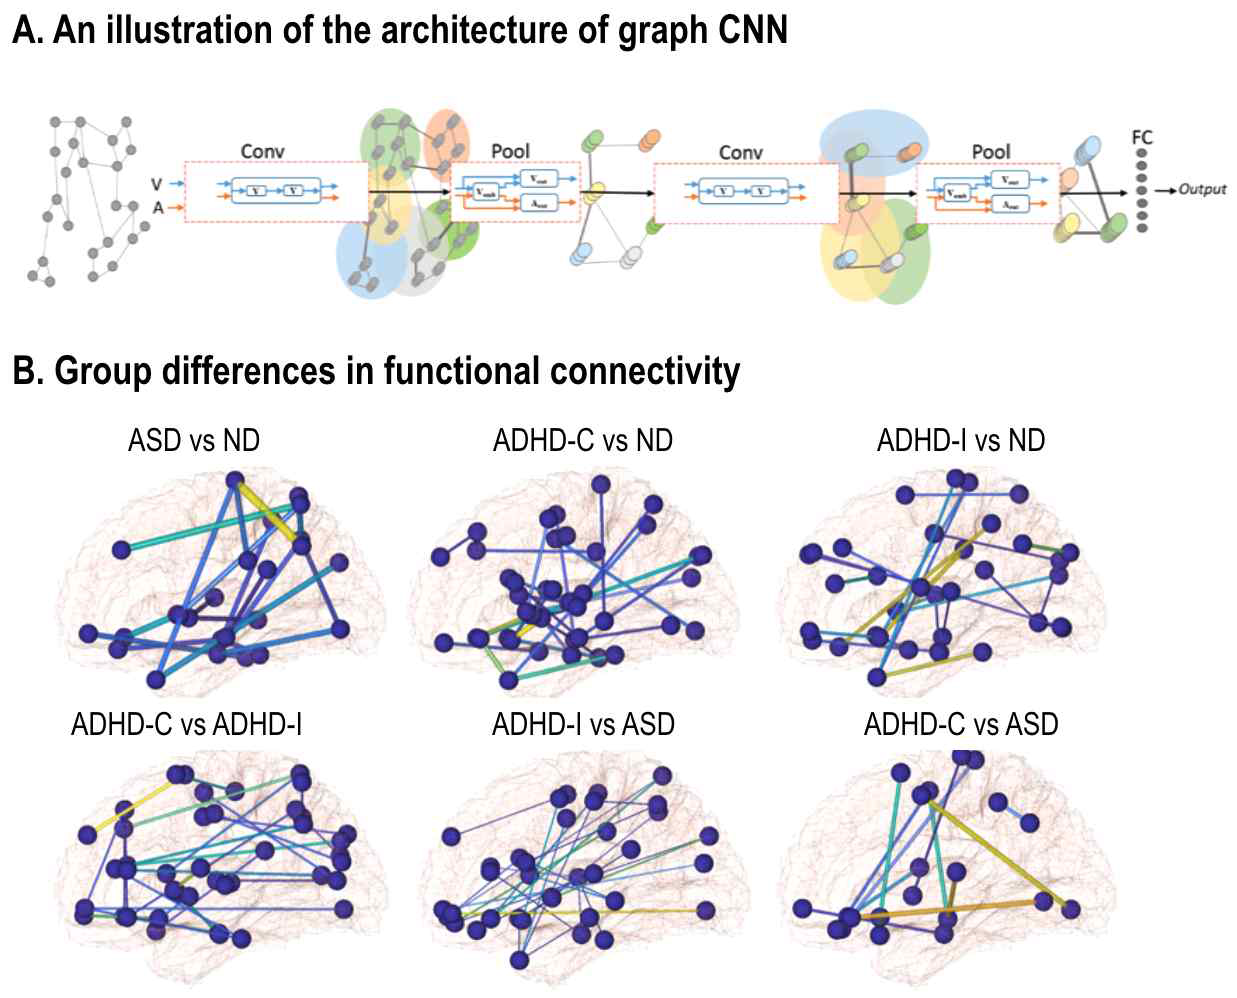 Graph-CNN 모델 학습방법(A)과 그룹간 뇌기능 연결성 차이(B)